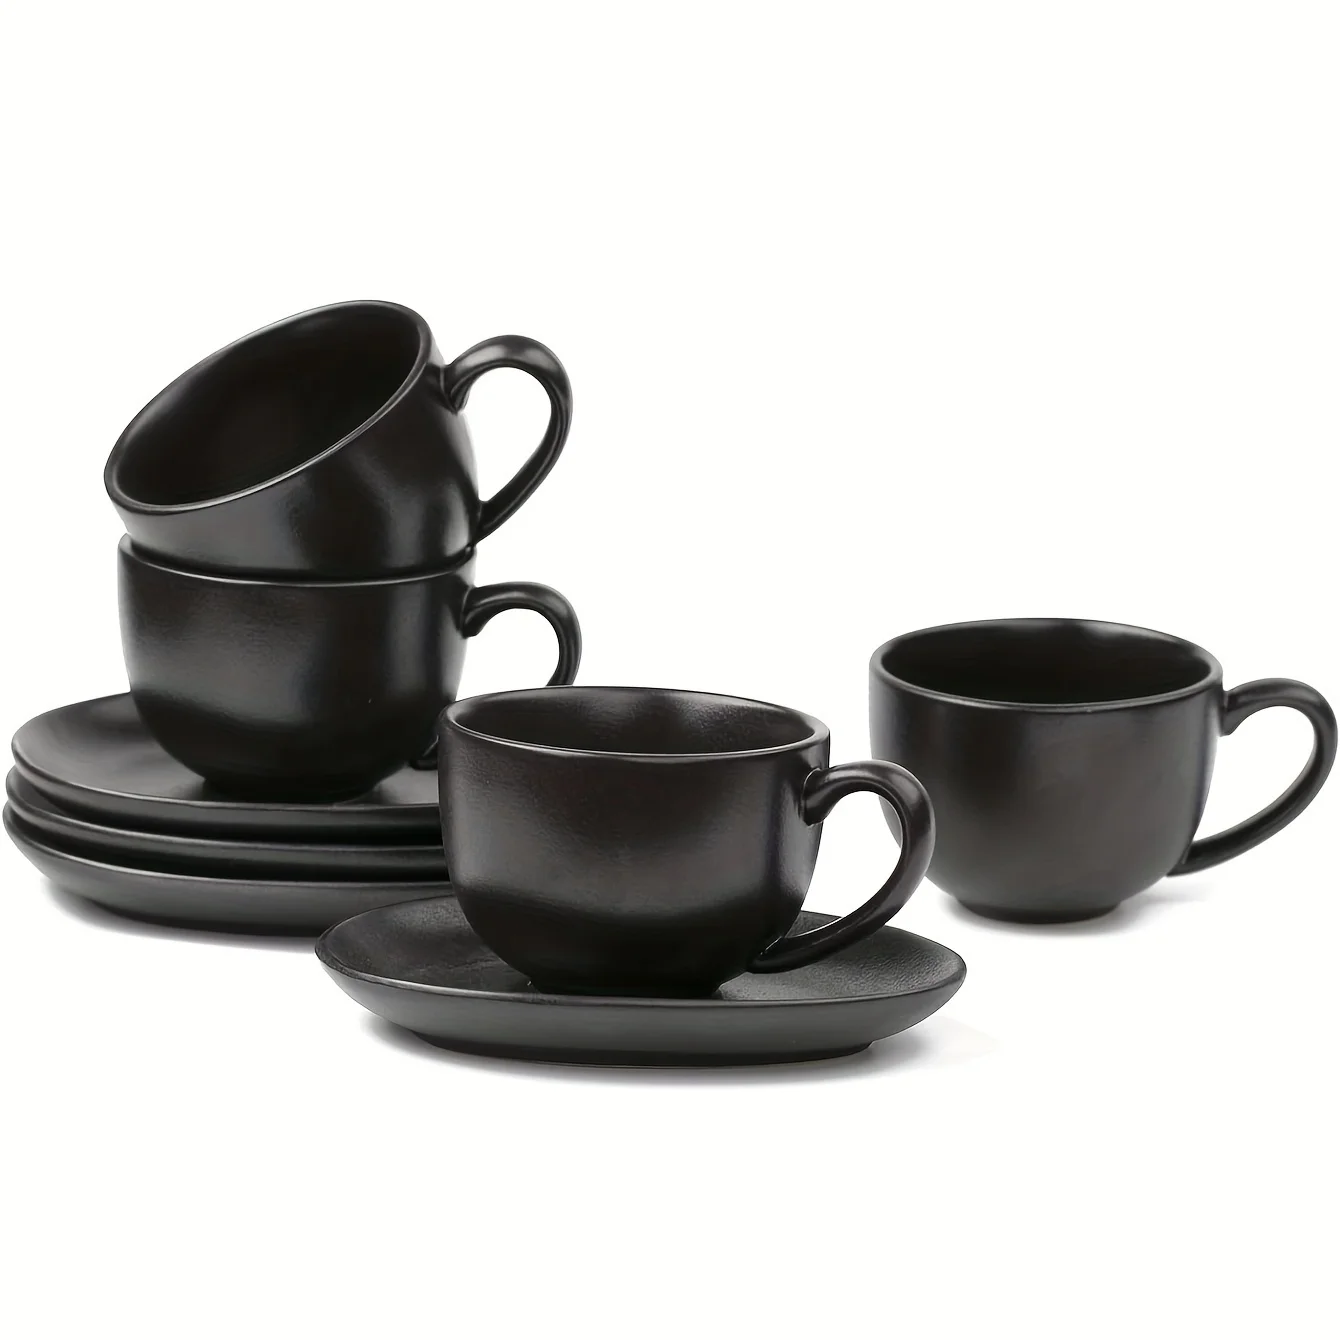 

4pcs/set, 6.5 Oz Cappuccino Cups With Saucers, Ceramic Coffee Cup For Double Shot, Au Lait, Latte, Tea, Cafe Mocha (Black), Kitc